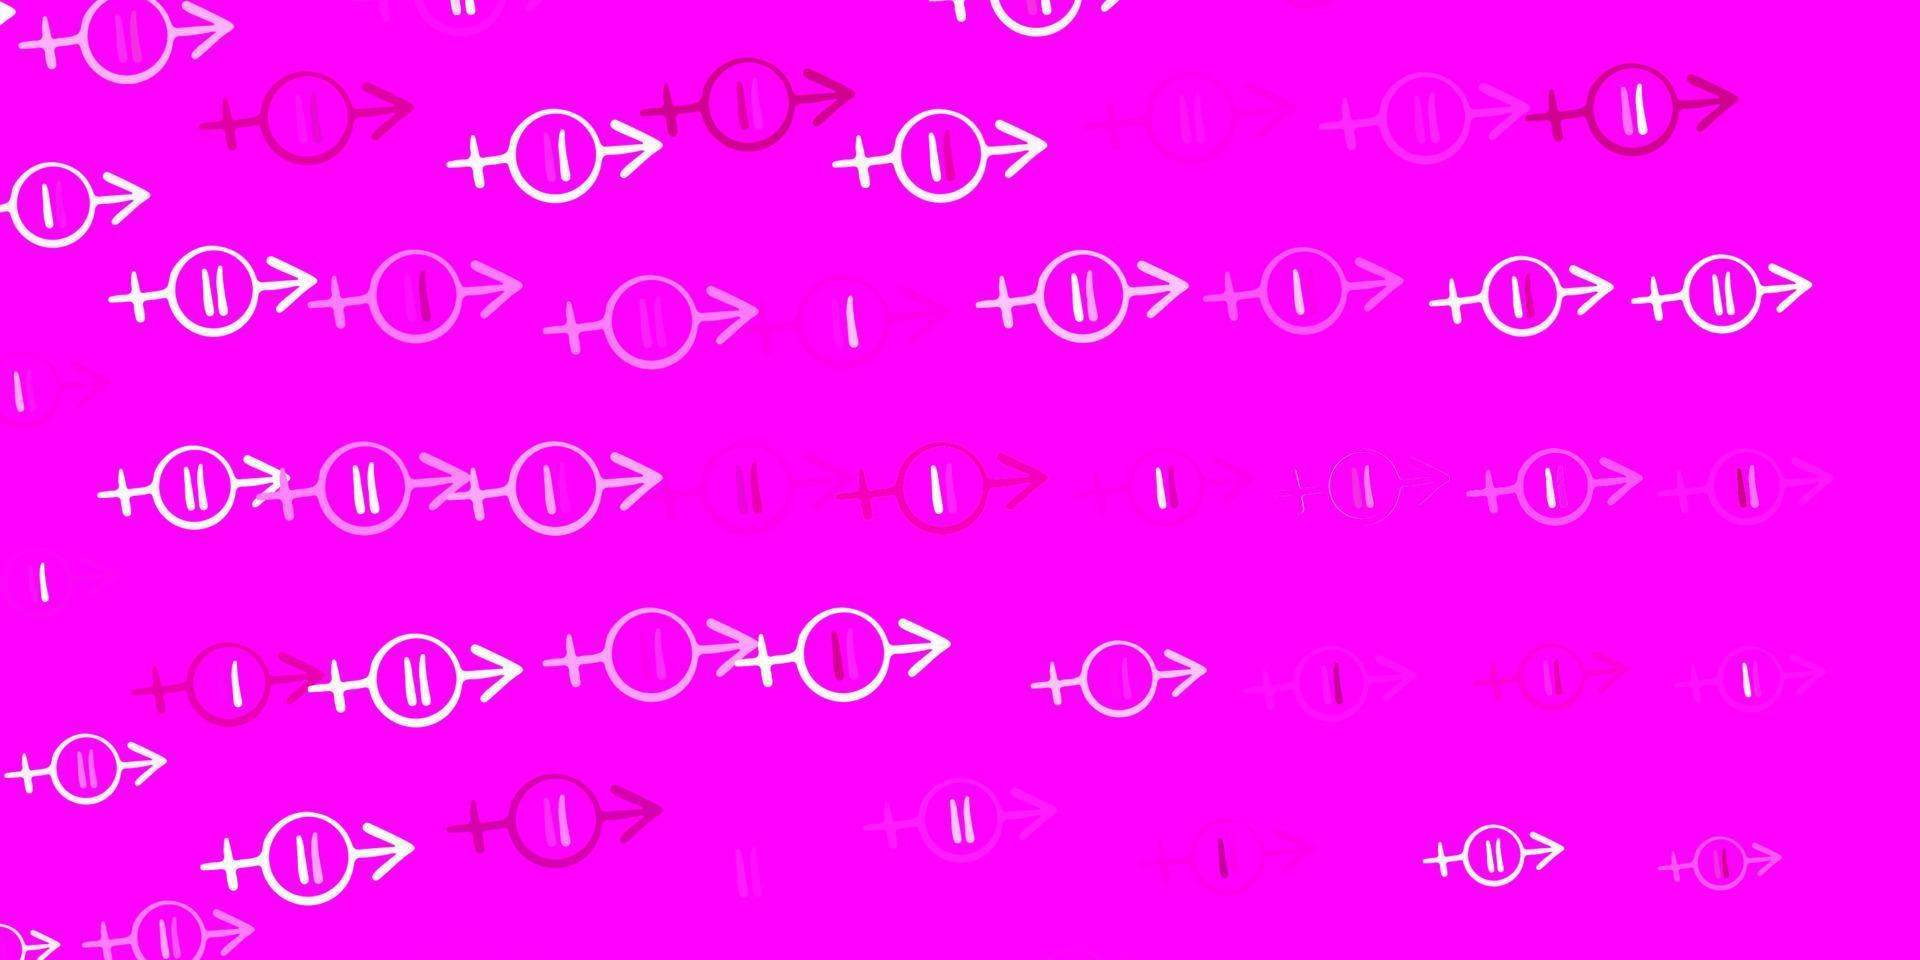 cenário de vetor rosa claro com símbolos de poder feminino.